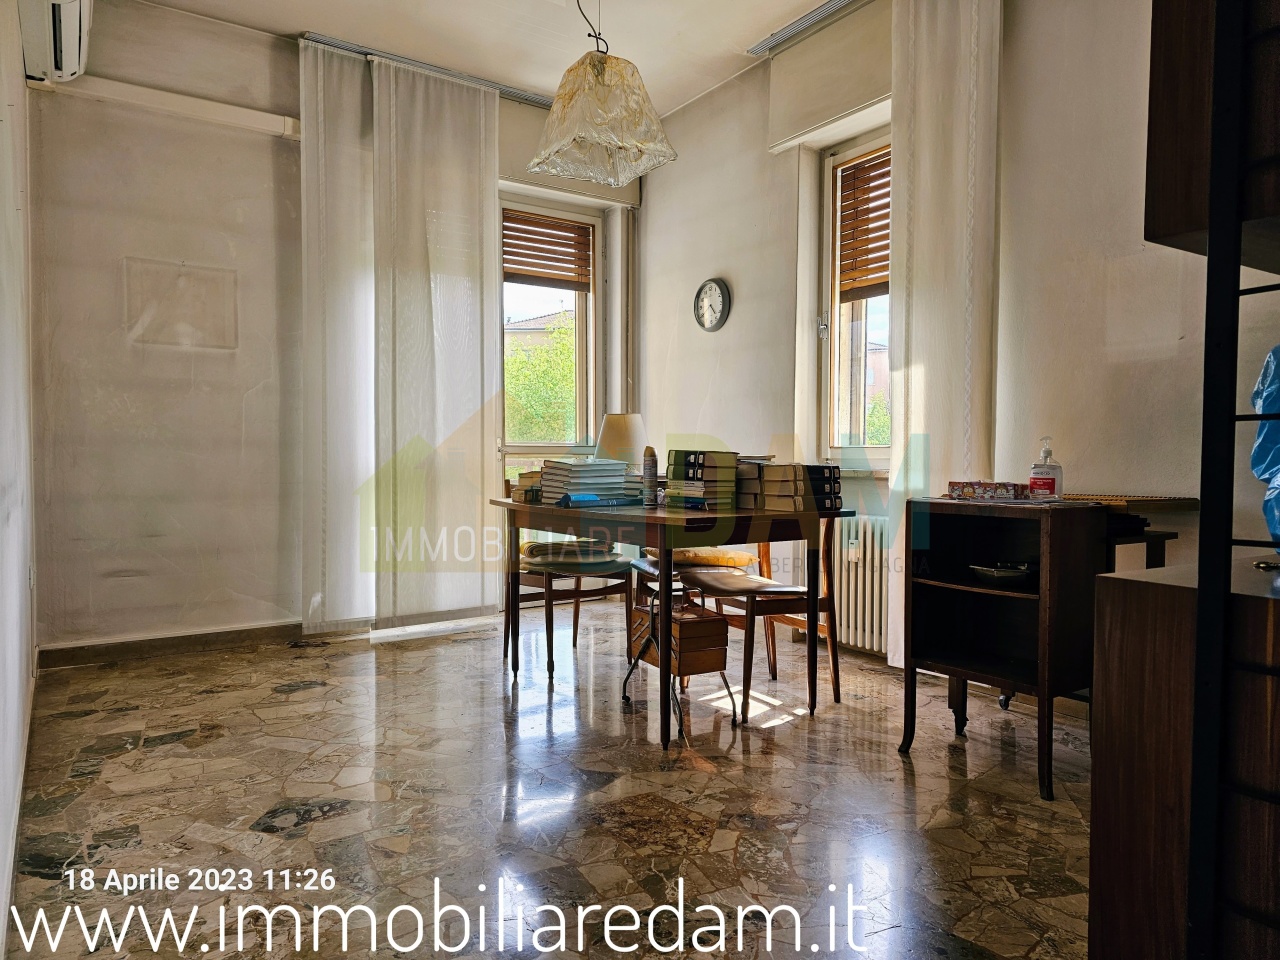 Appartamento in vendita a Vicenza, 4 locali, prezzo € 63.000 | PortaleAgenzieImmobiliari.it